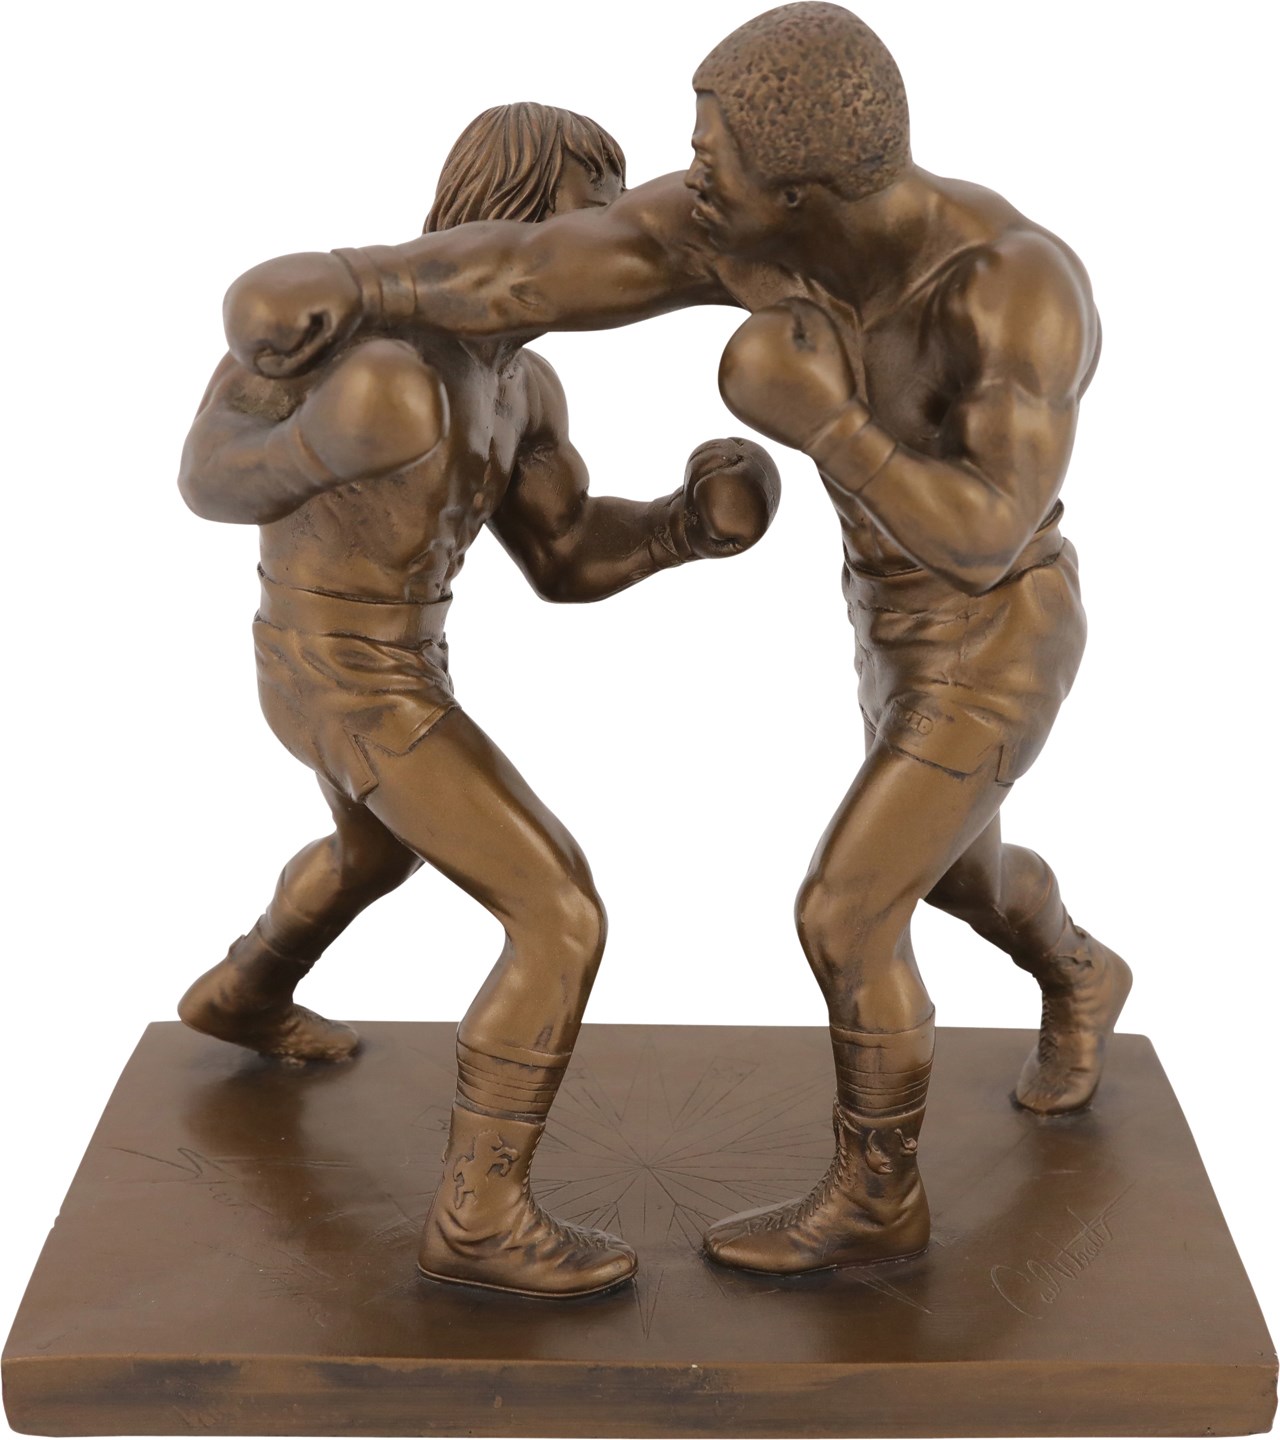 1979 Rocky Balboa vs Apollo Creed Statue by Giovanni Schoeman